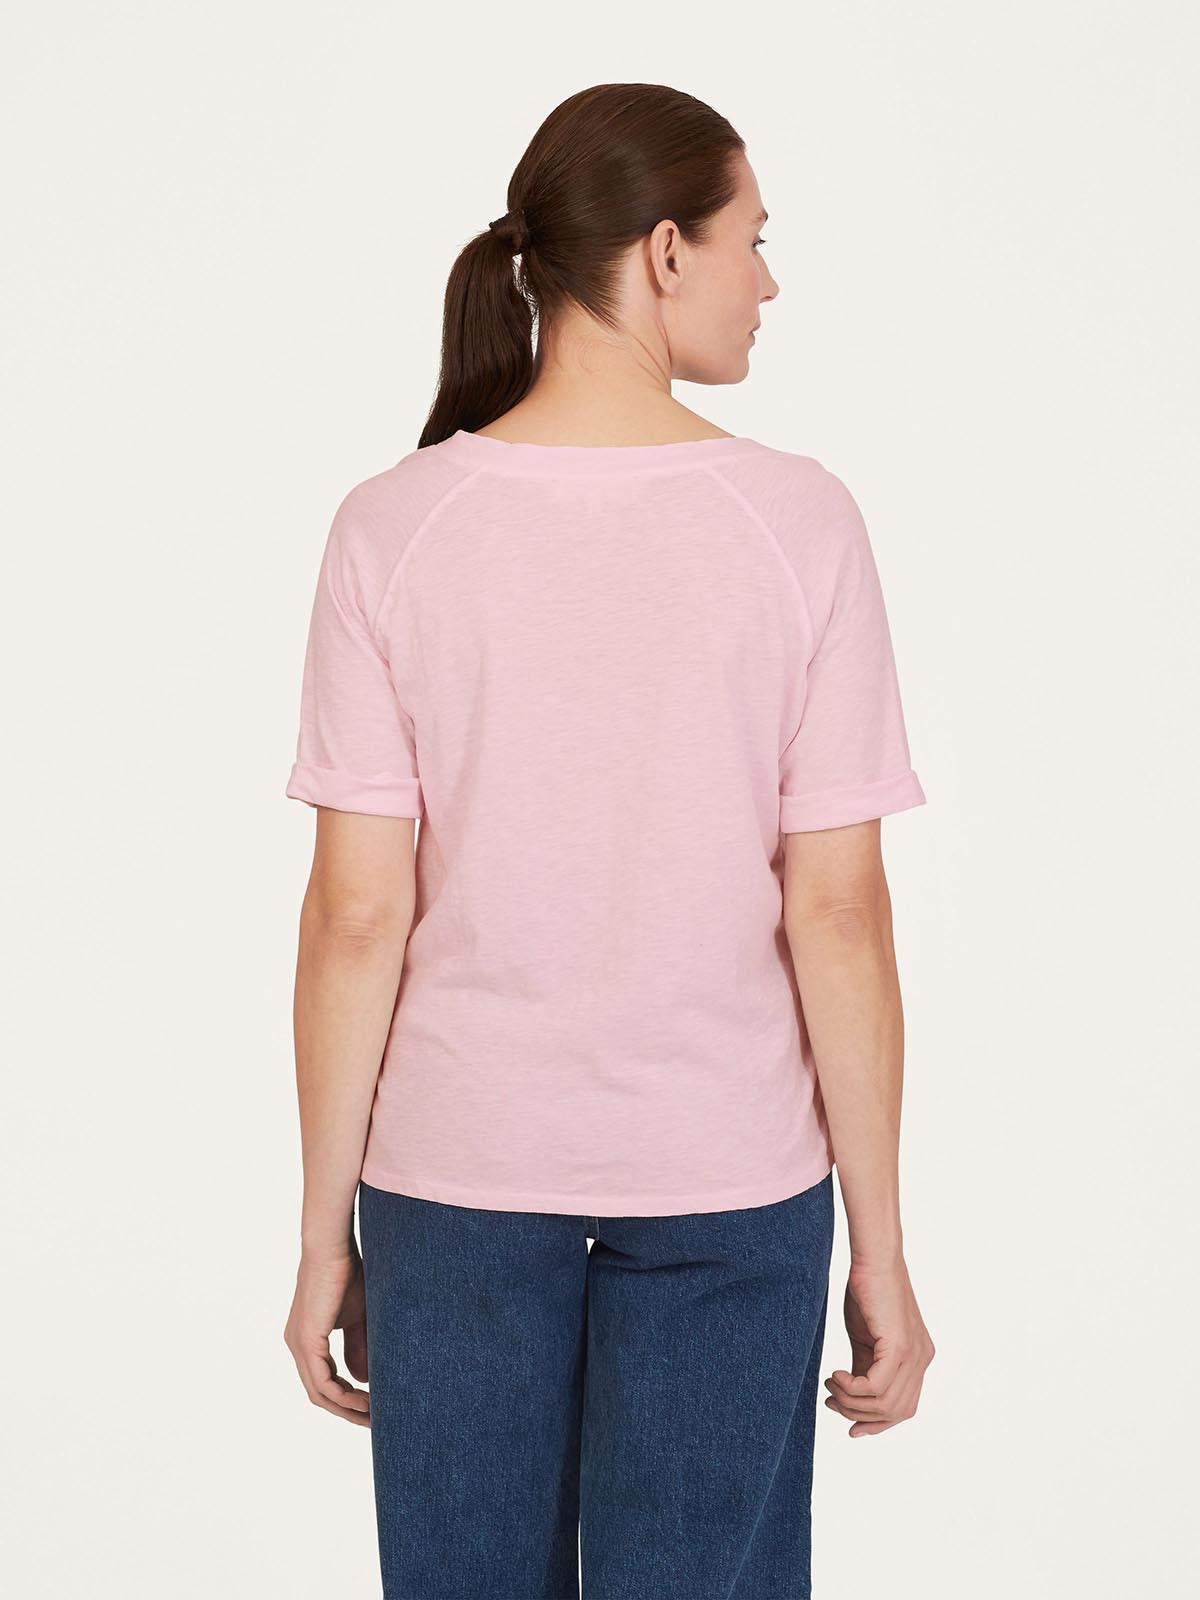 Fairtrade Organic Cotton Notch Neck T-Shirt - Orchid Pink